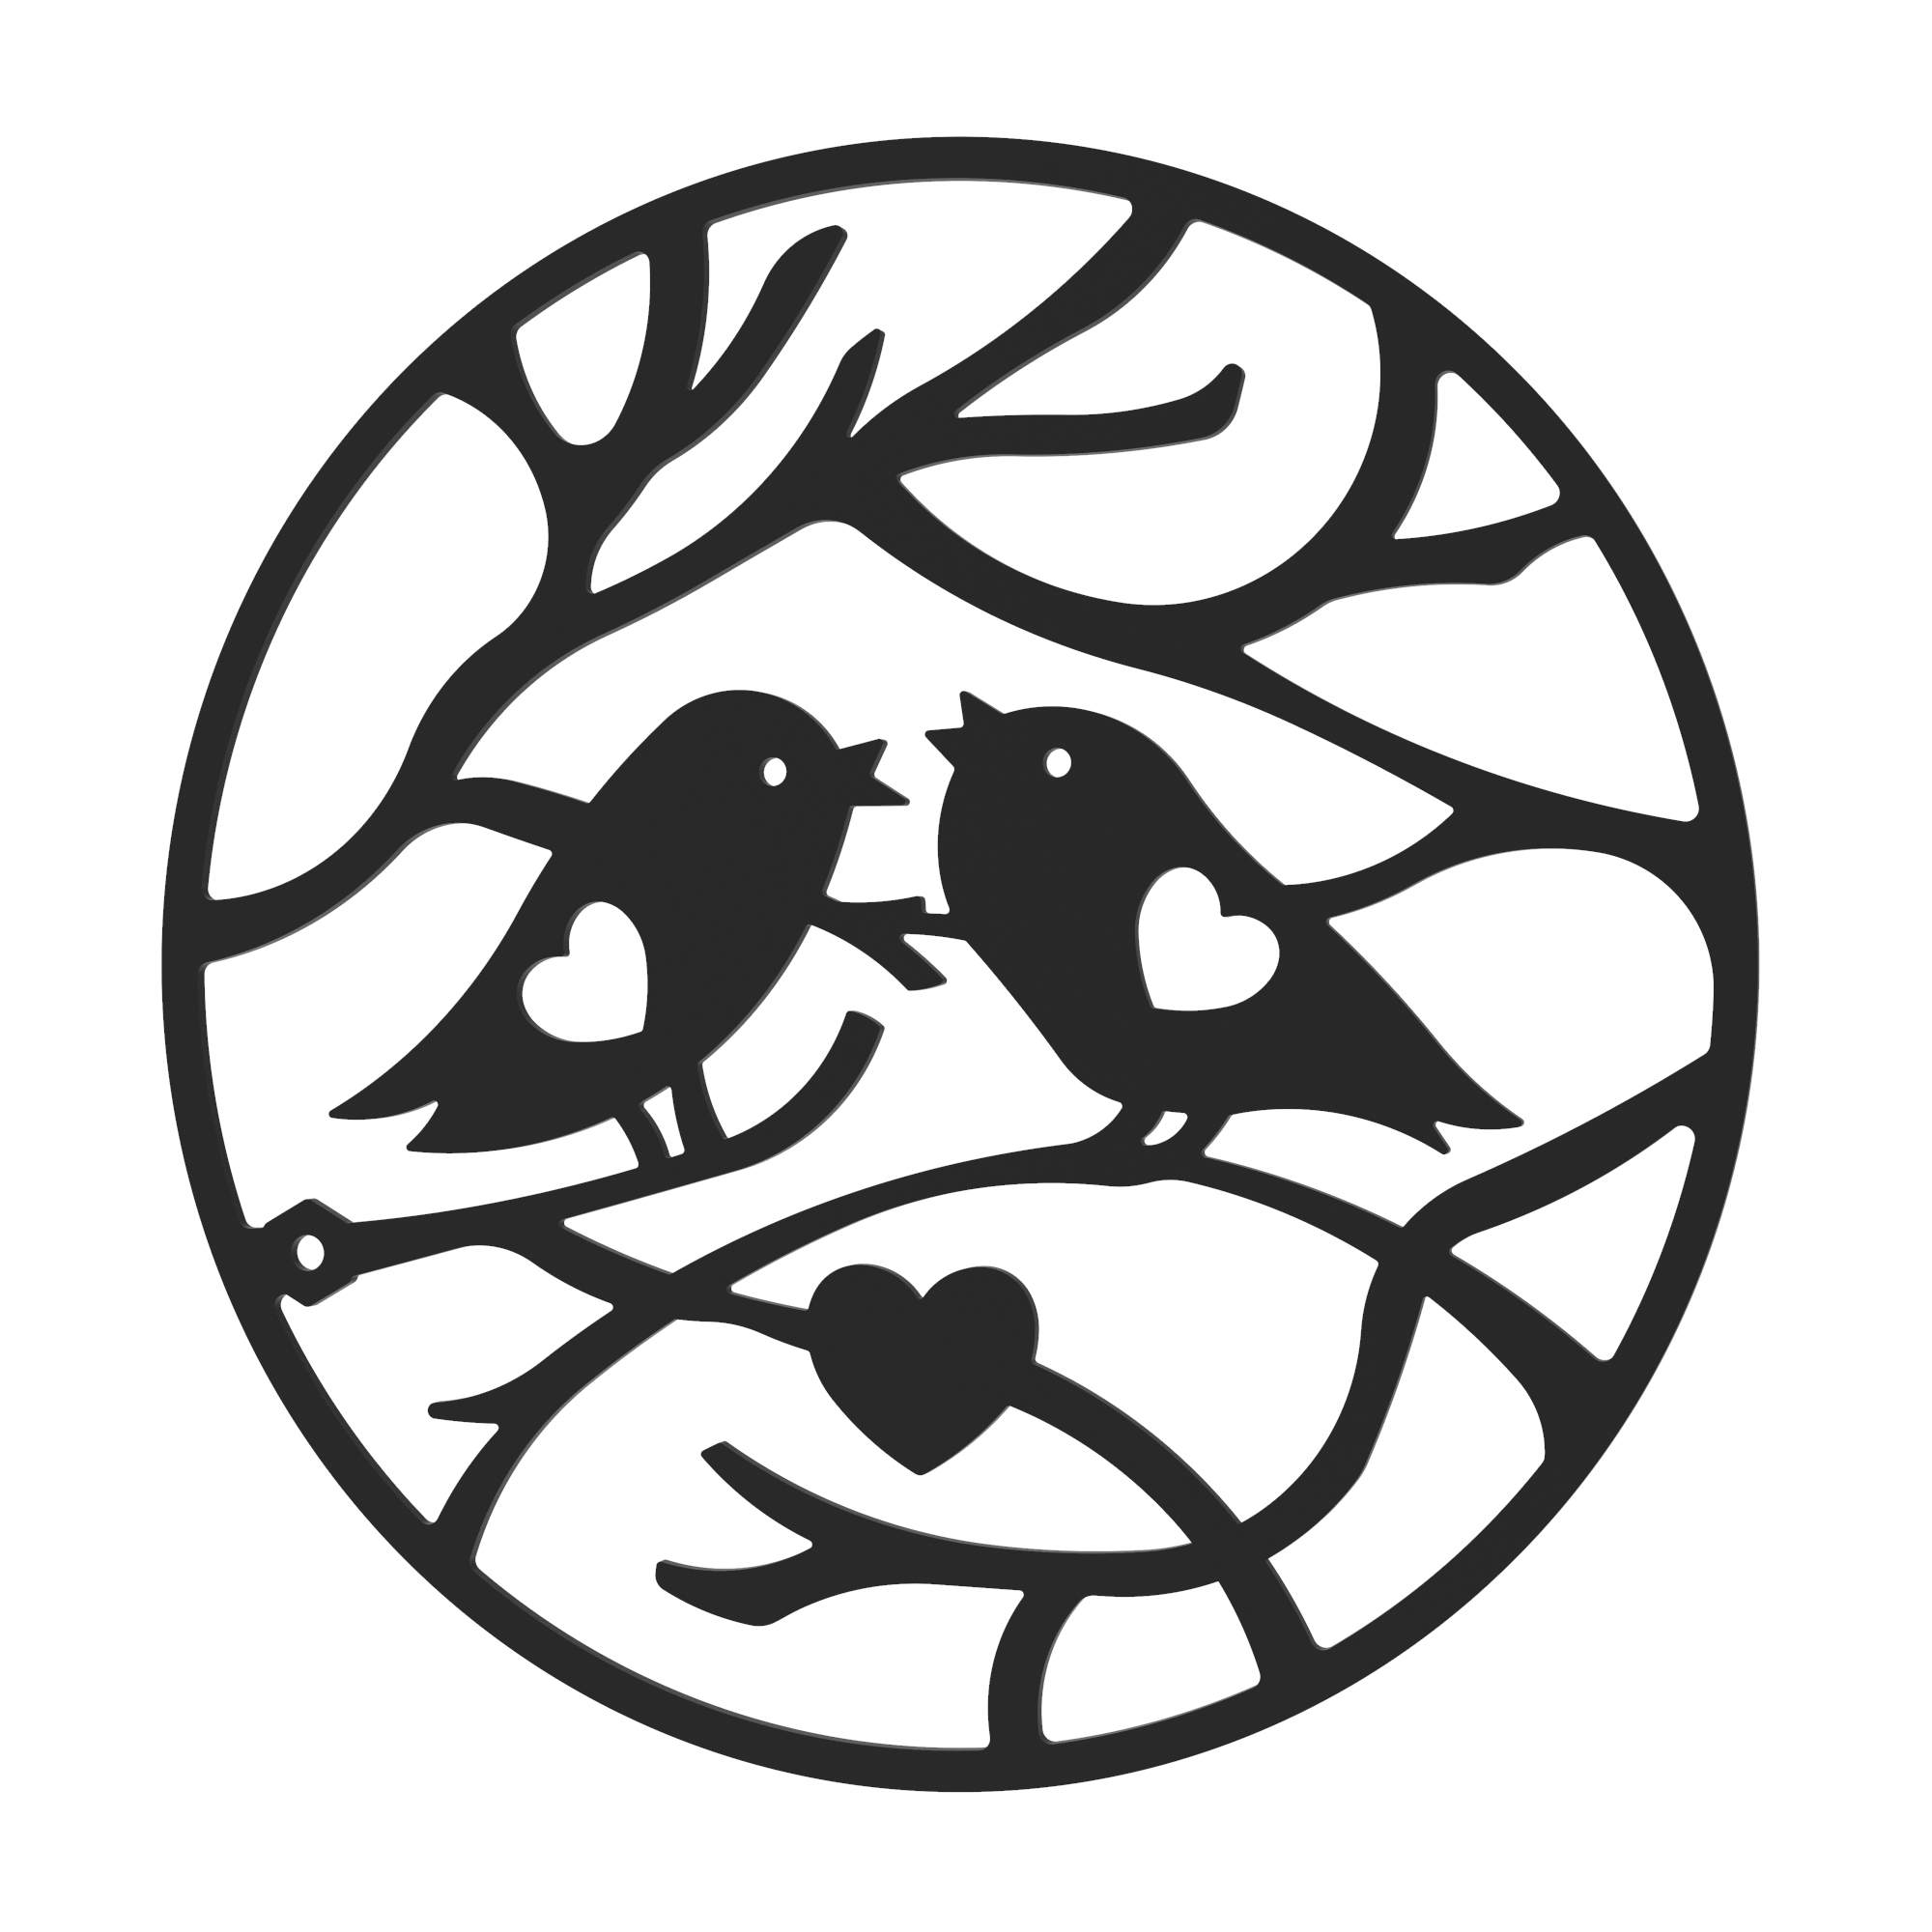 Dekorationskranz BIRDS aus Metall, schwarz, Motiv Winter